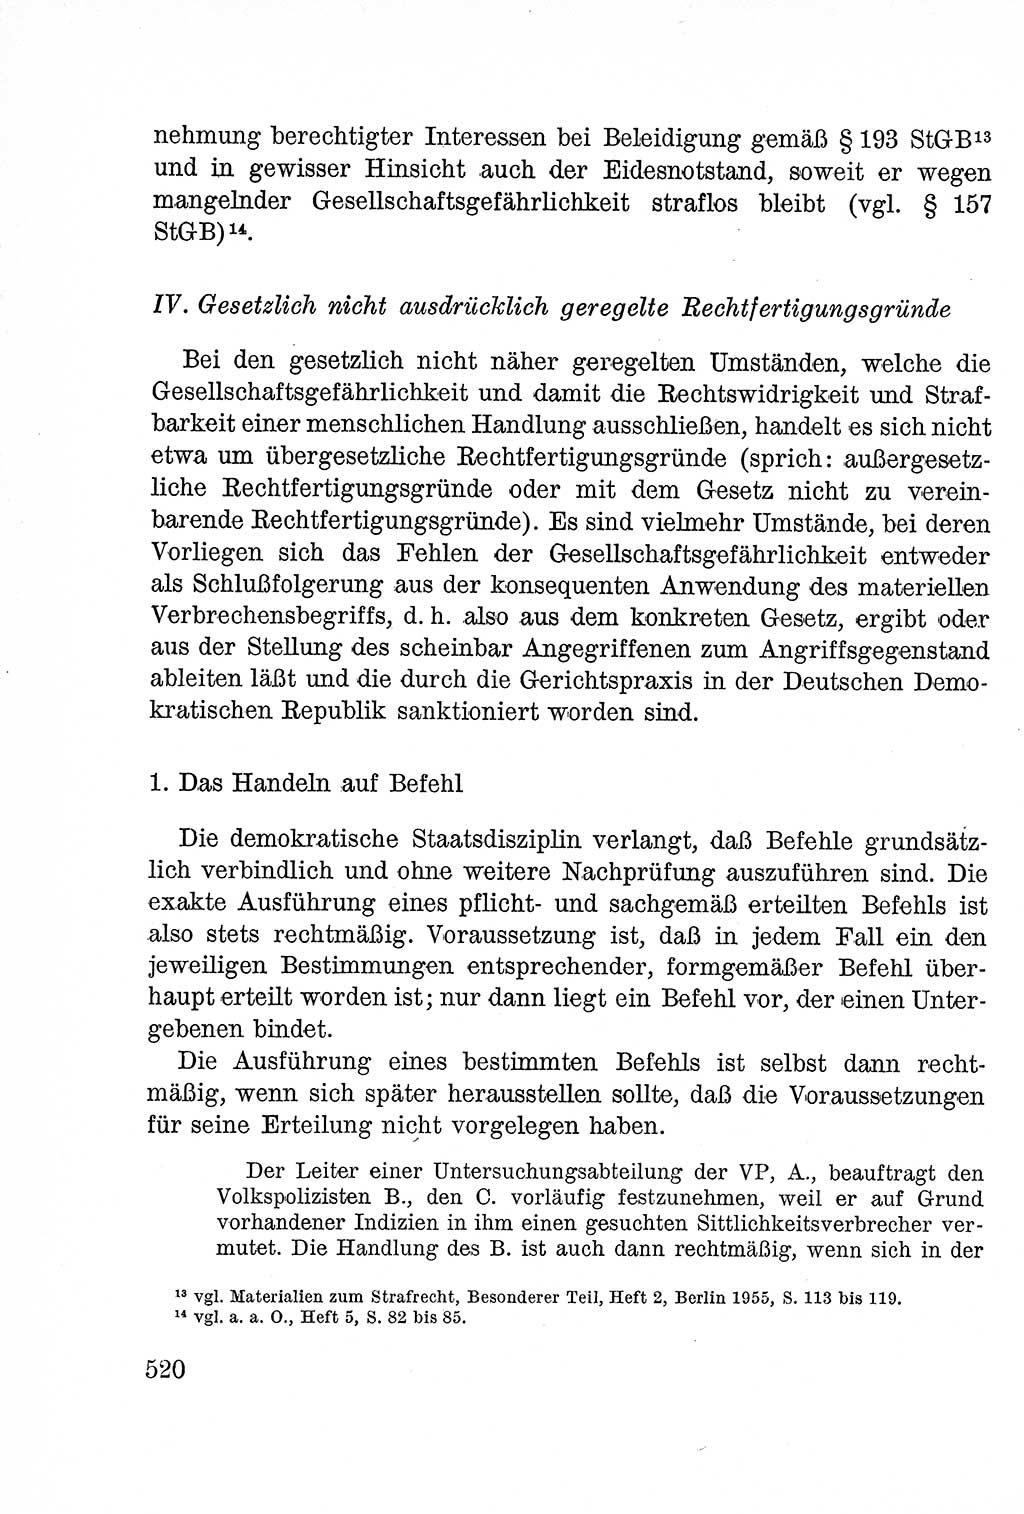 Lehrbuch des Strafrechts der Deutschen Demokratischen Republik (DDR), Allgemeiner Teil 1957, Seite 520 (Lb. Strafr. DDR AT 1957, S. 520)